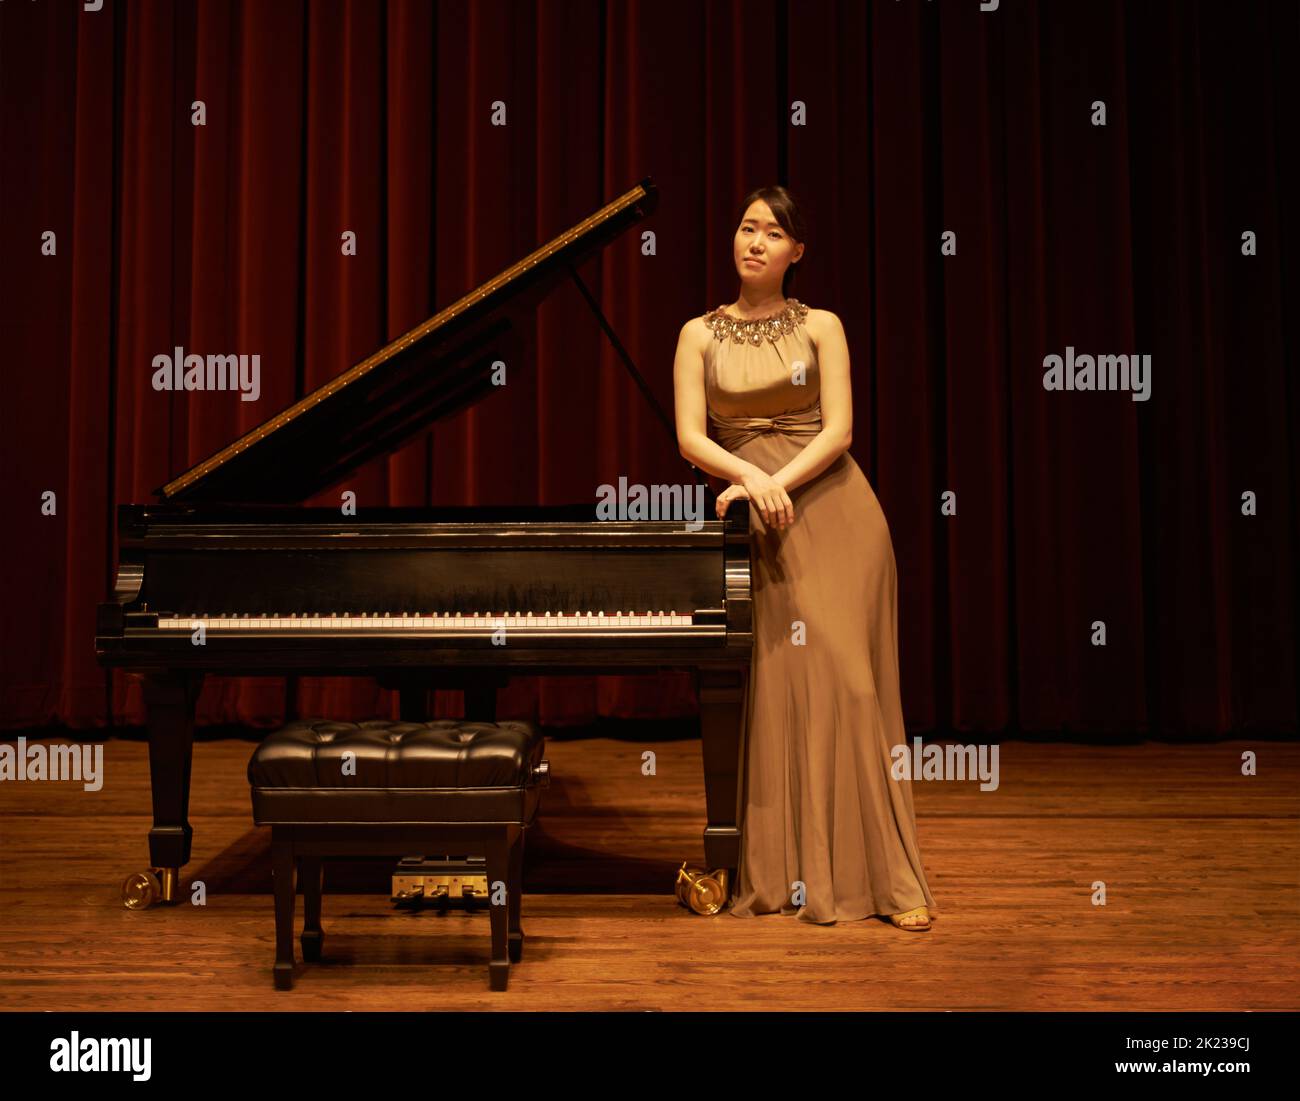 Eröffnungsabend. Eine junge Frau, die am Ende eines Musikkonzerts an ihrem Klavier steht. Stockfoto